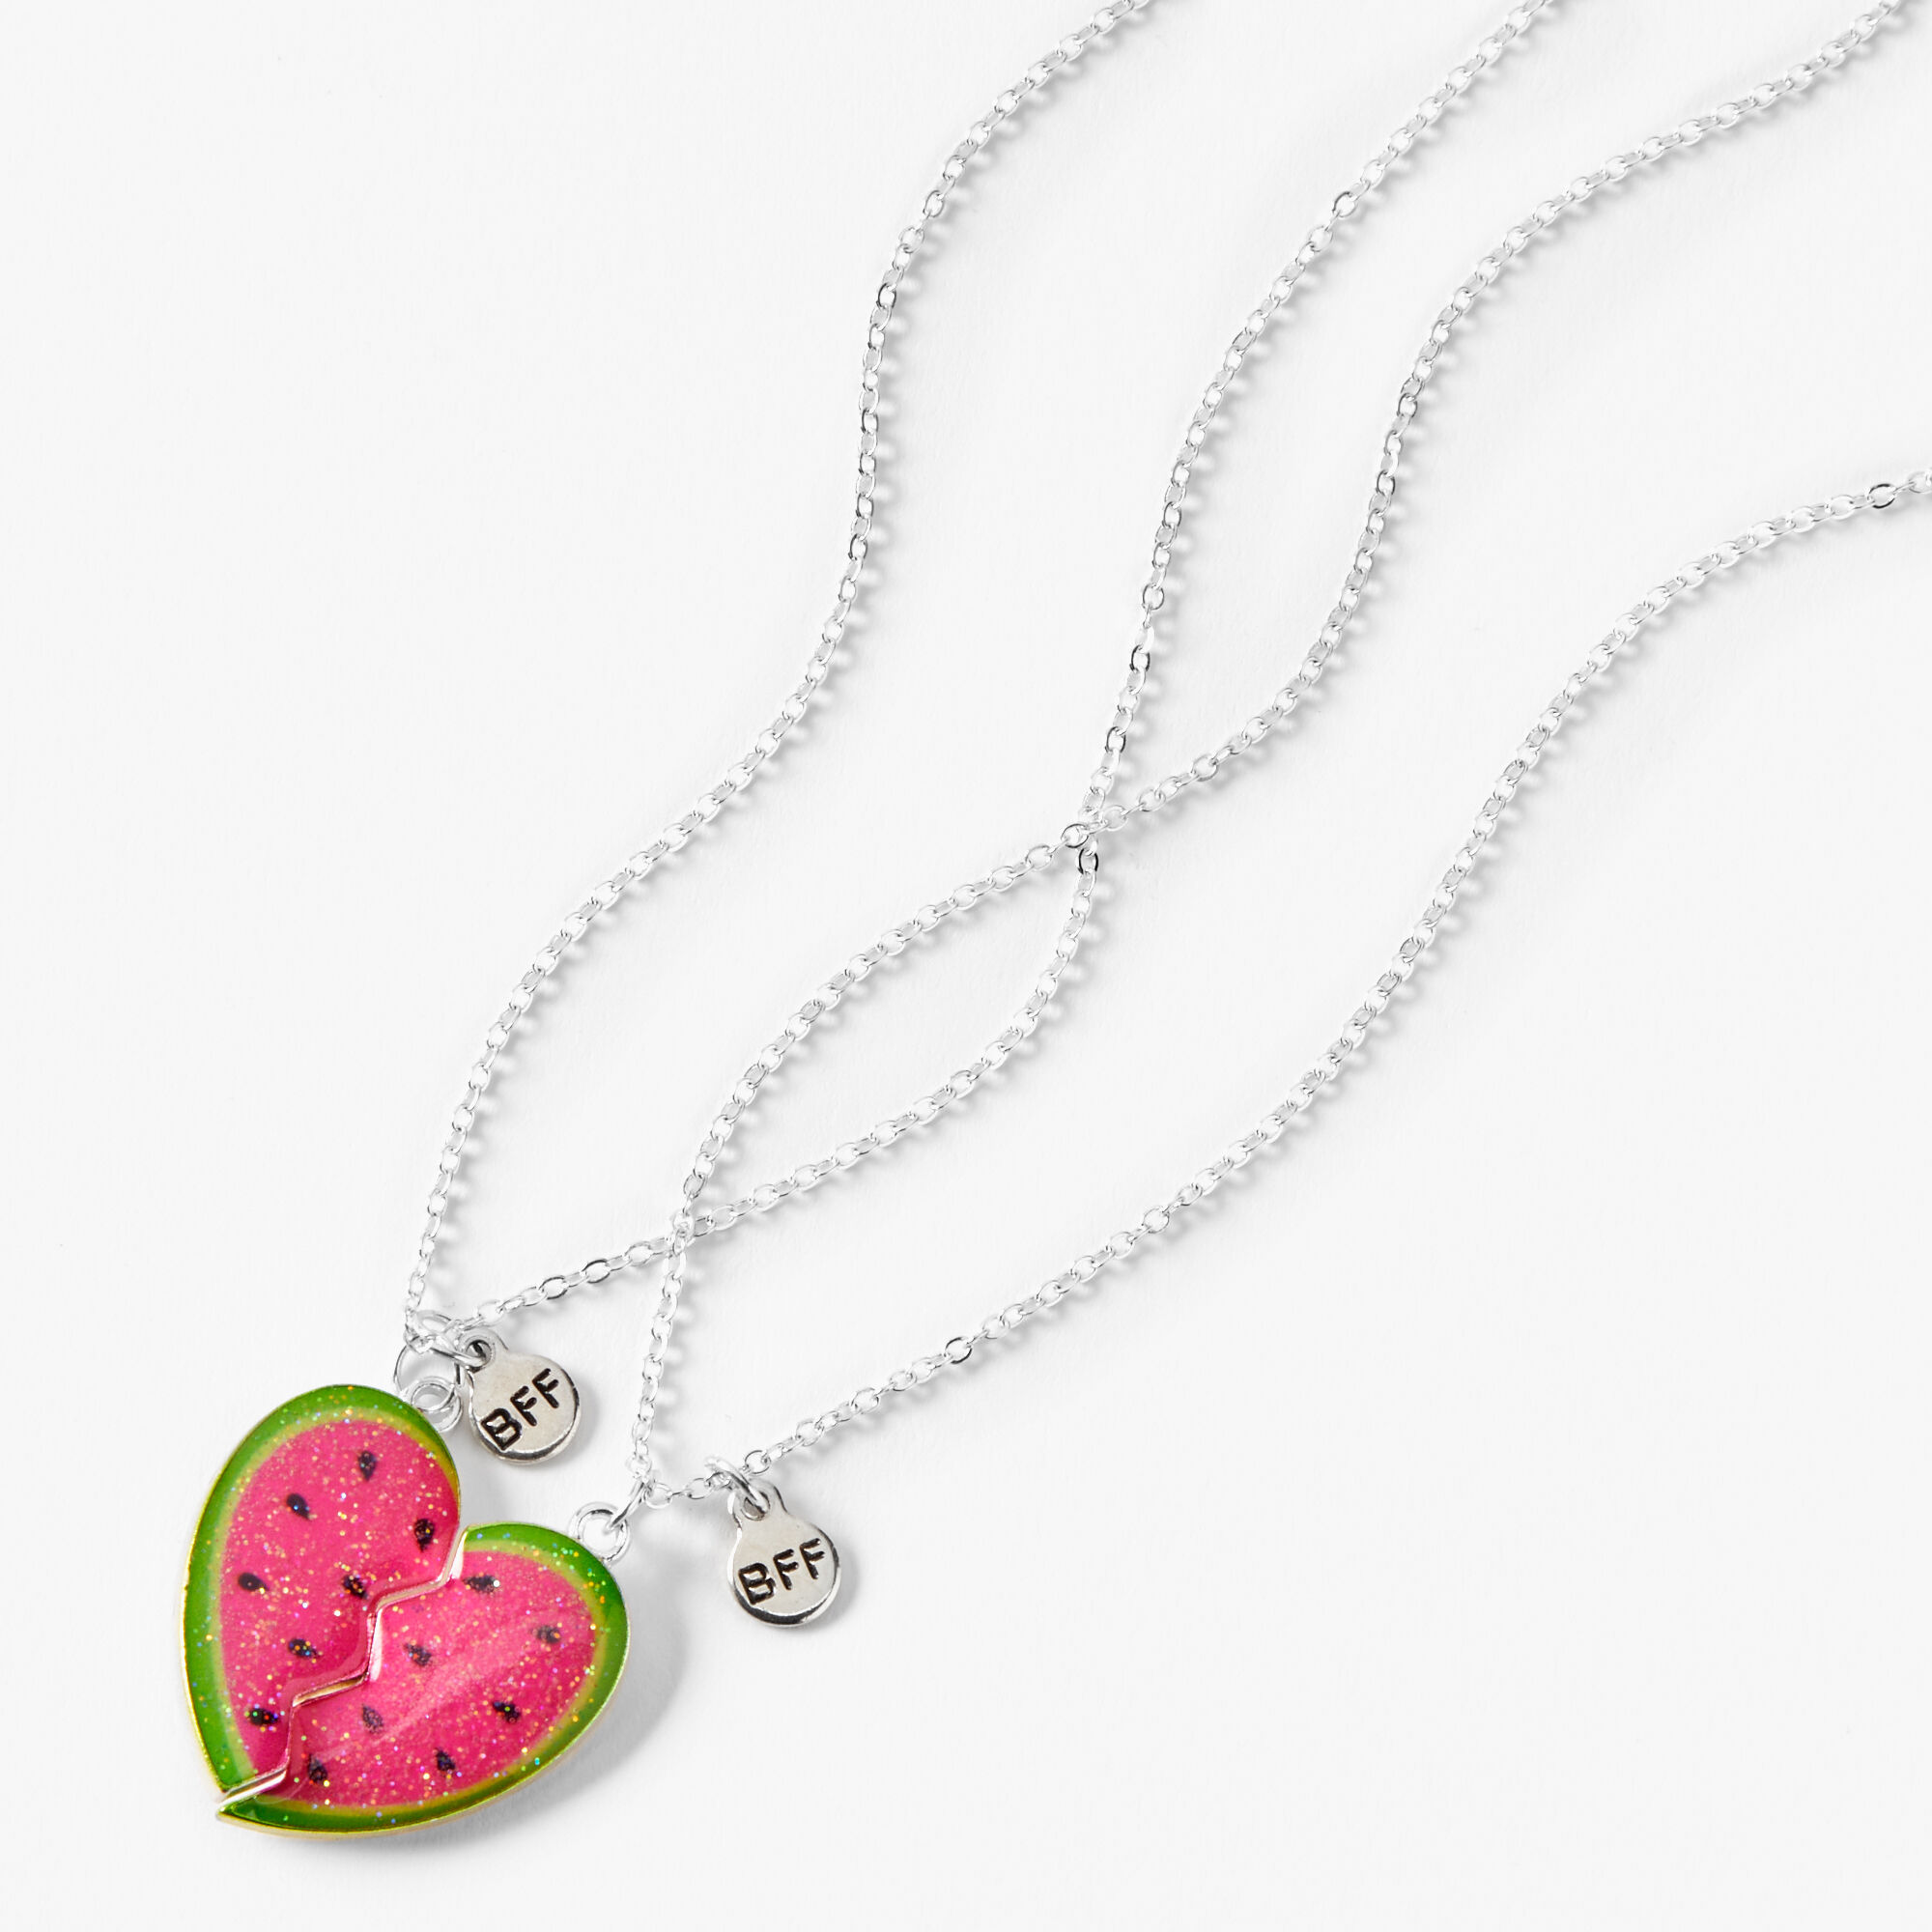 Best Friends Bubble Tea Pendant Necklaces - 2 Pack | Bff necklaces, Tea  jewelry, Best friend necklaces